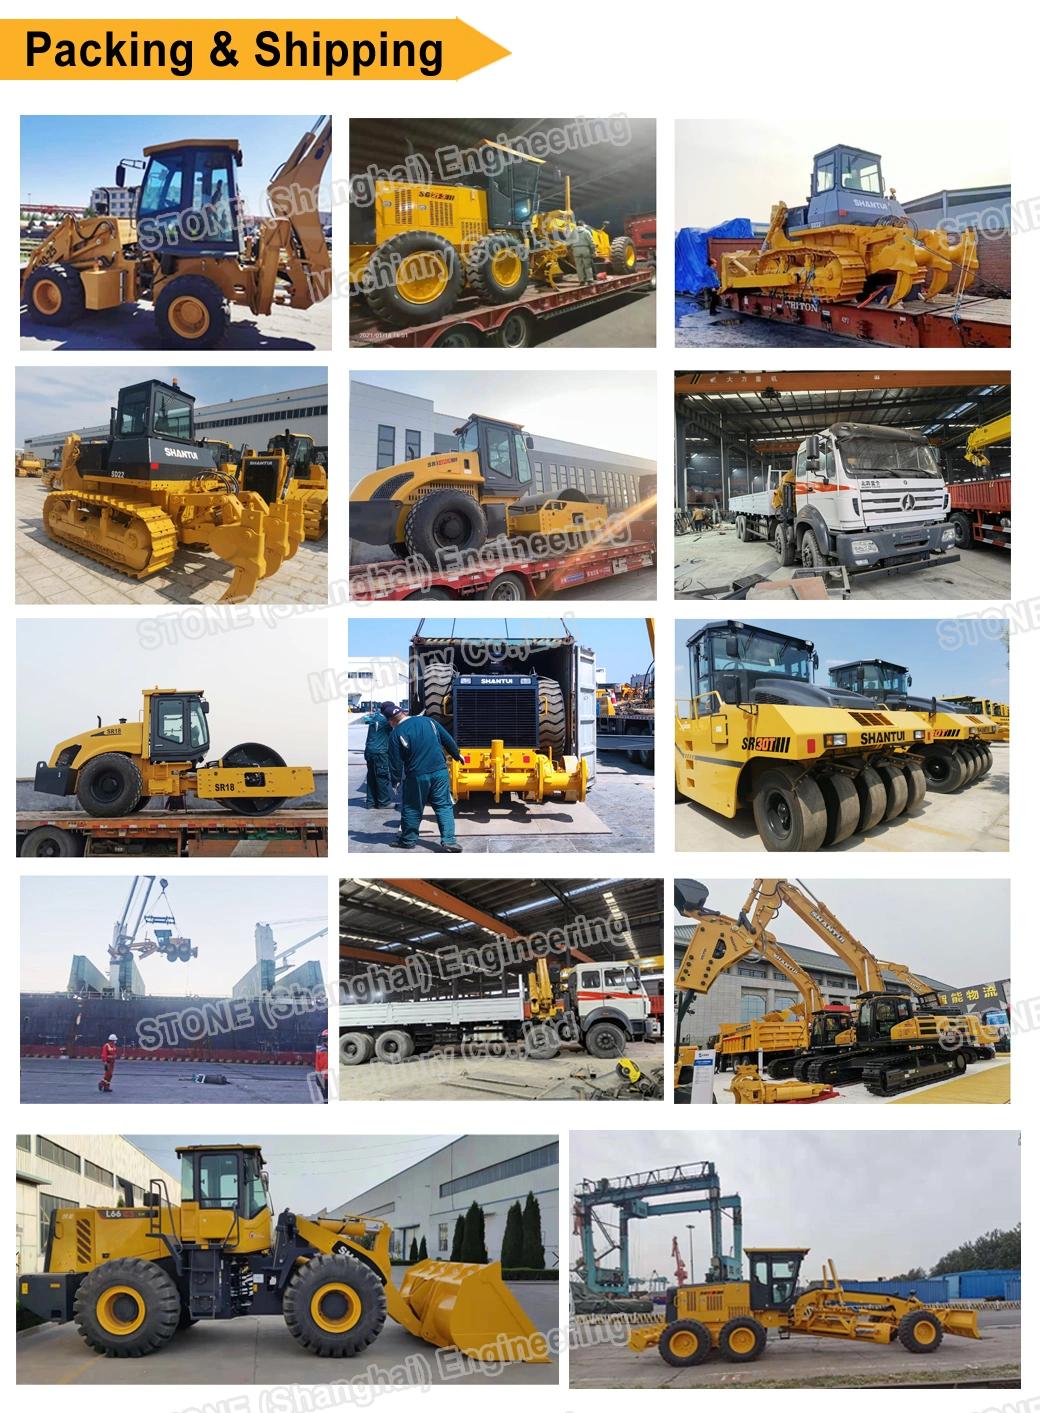 China Brand Shantui Construction Machinery Equipment New Crawler Excavators Shantui 20ton Hydraulic RC Crawler Track Excavator Machine Se210 Se210-9 for Sale